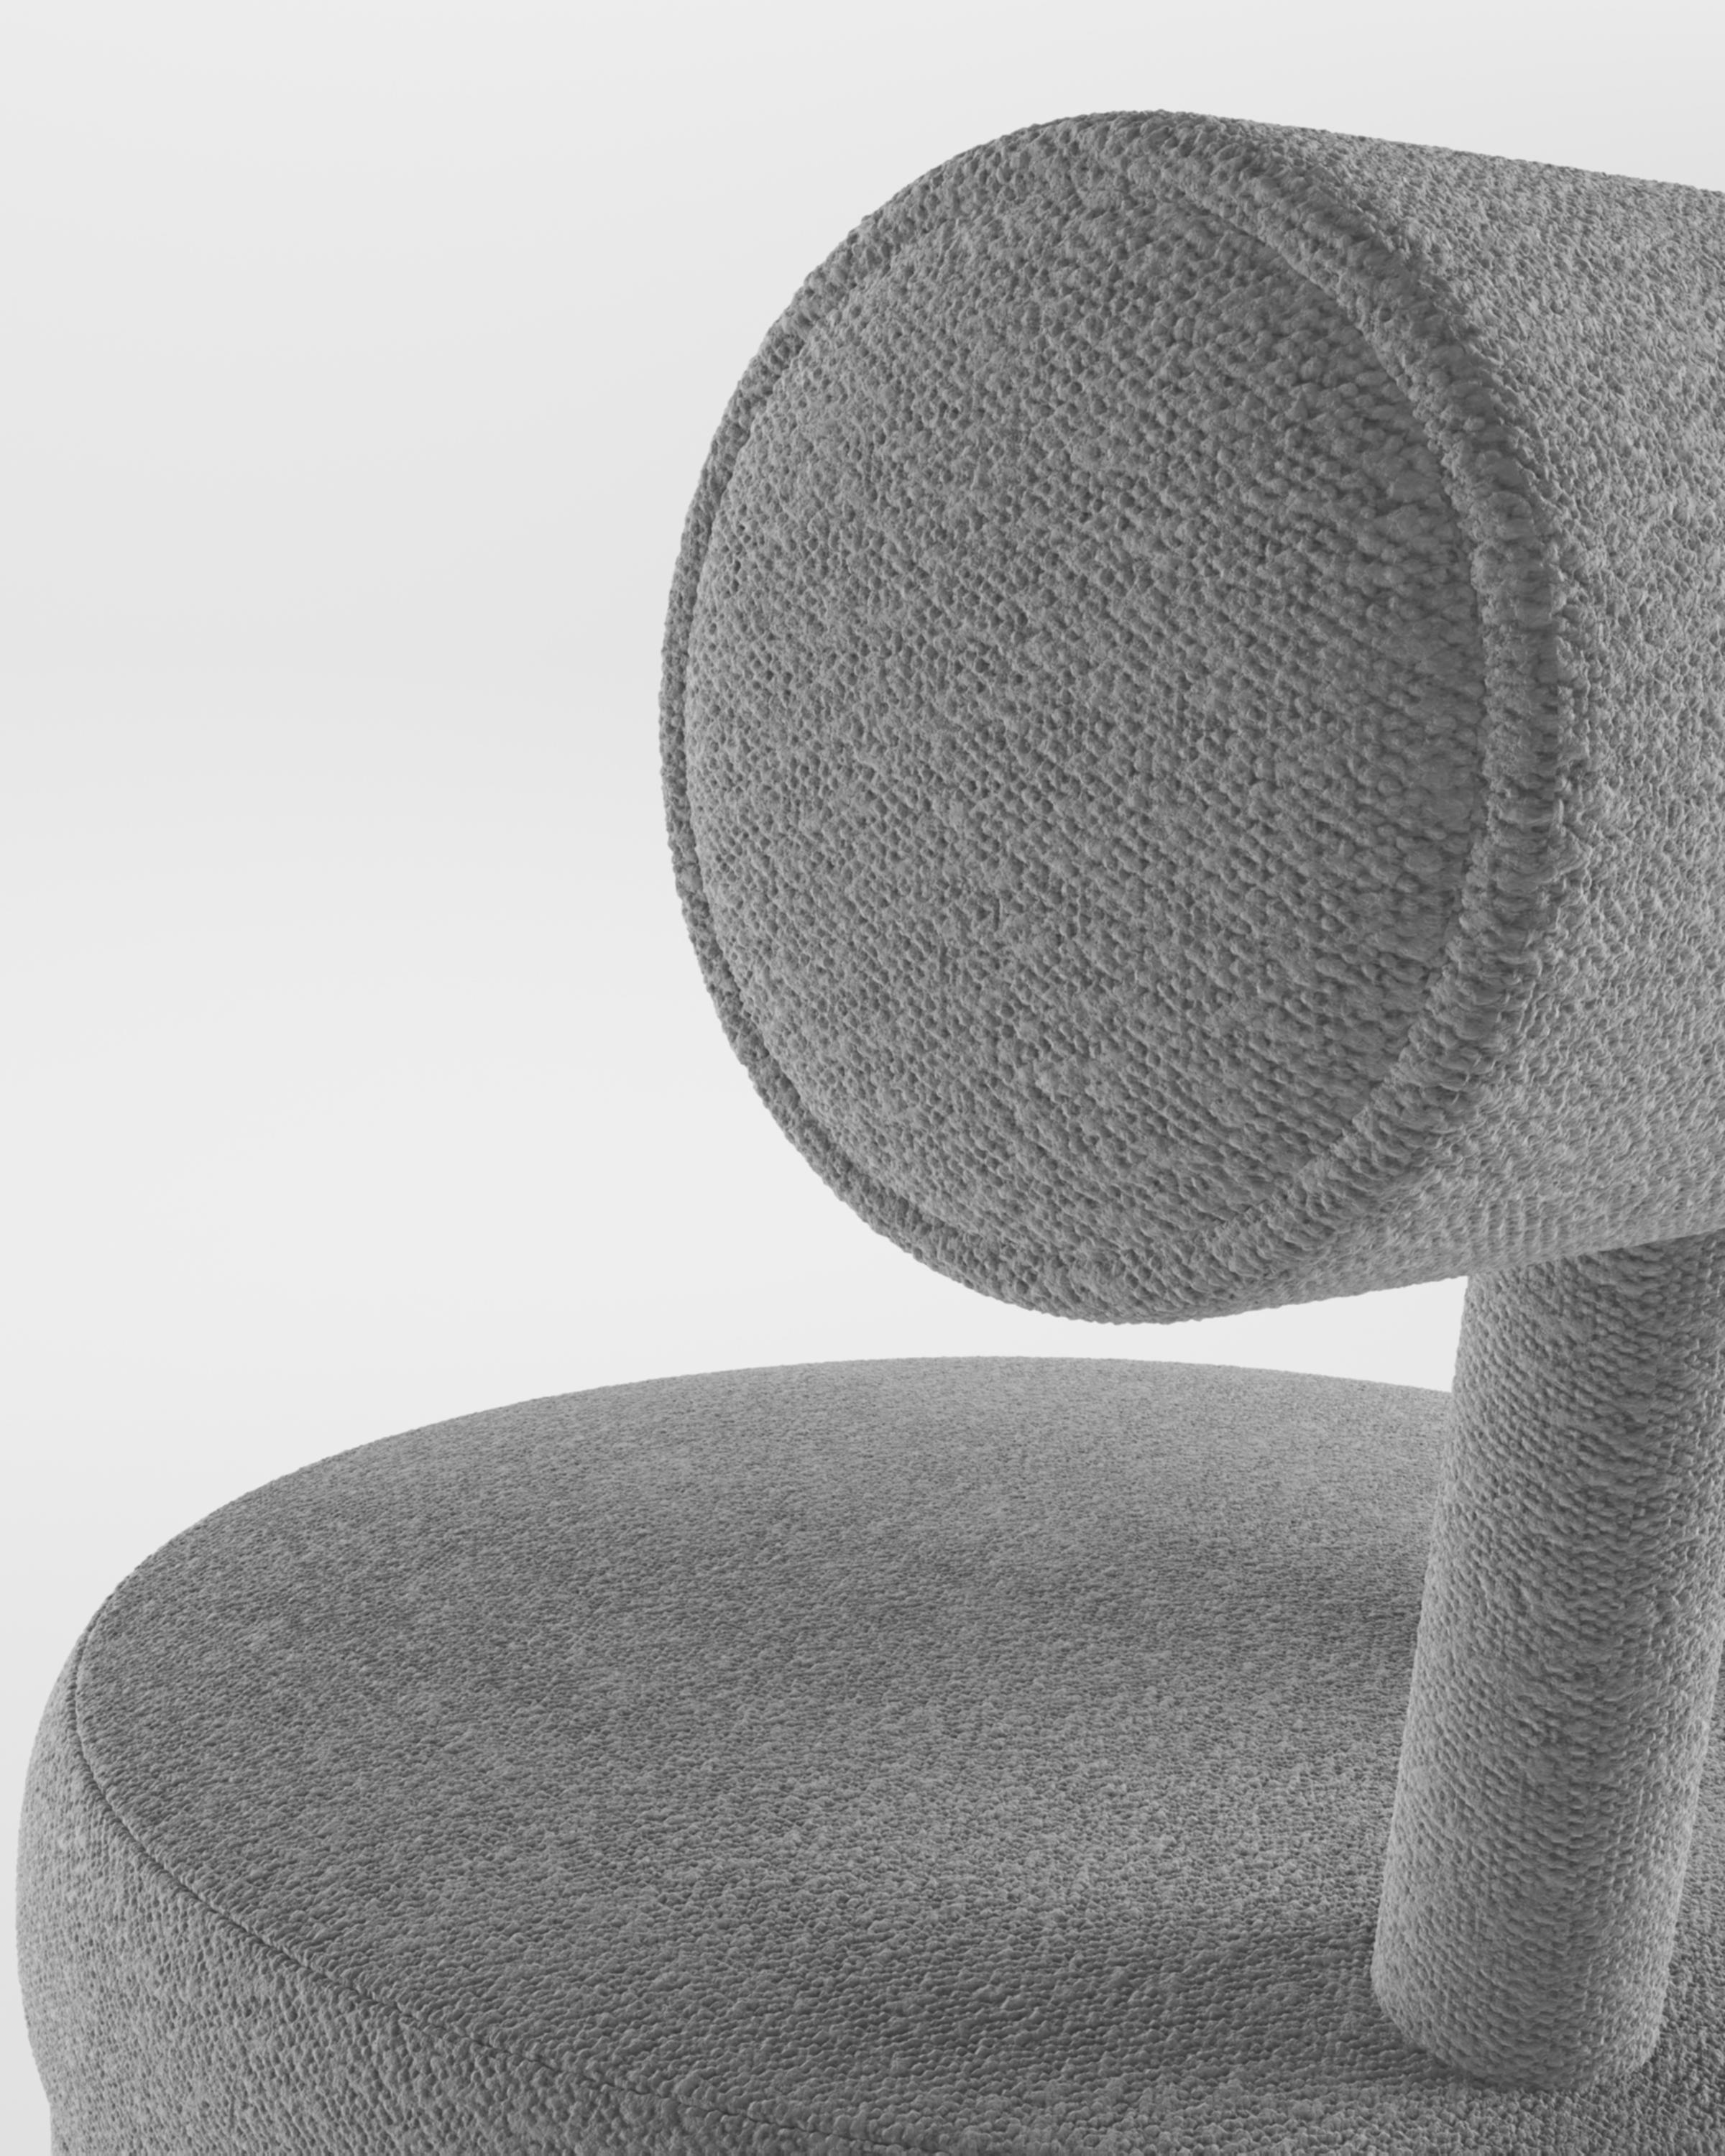 Moderner Moca Barstuhl mit Stoffbezug von Studio Rig für Collector Studio

Ein Stuhl, der sowohl moderne als auch klassische Designansätze miteinander verbindet.
Der strapazierfähige und solide Stuhl ist so konzipiert, dass er sich an den Körper